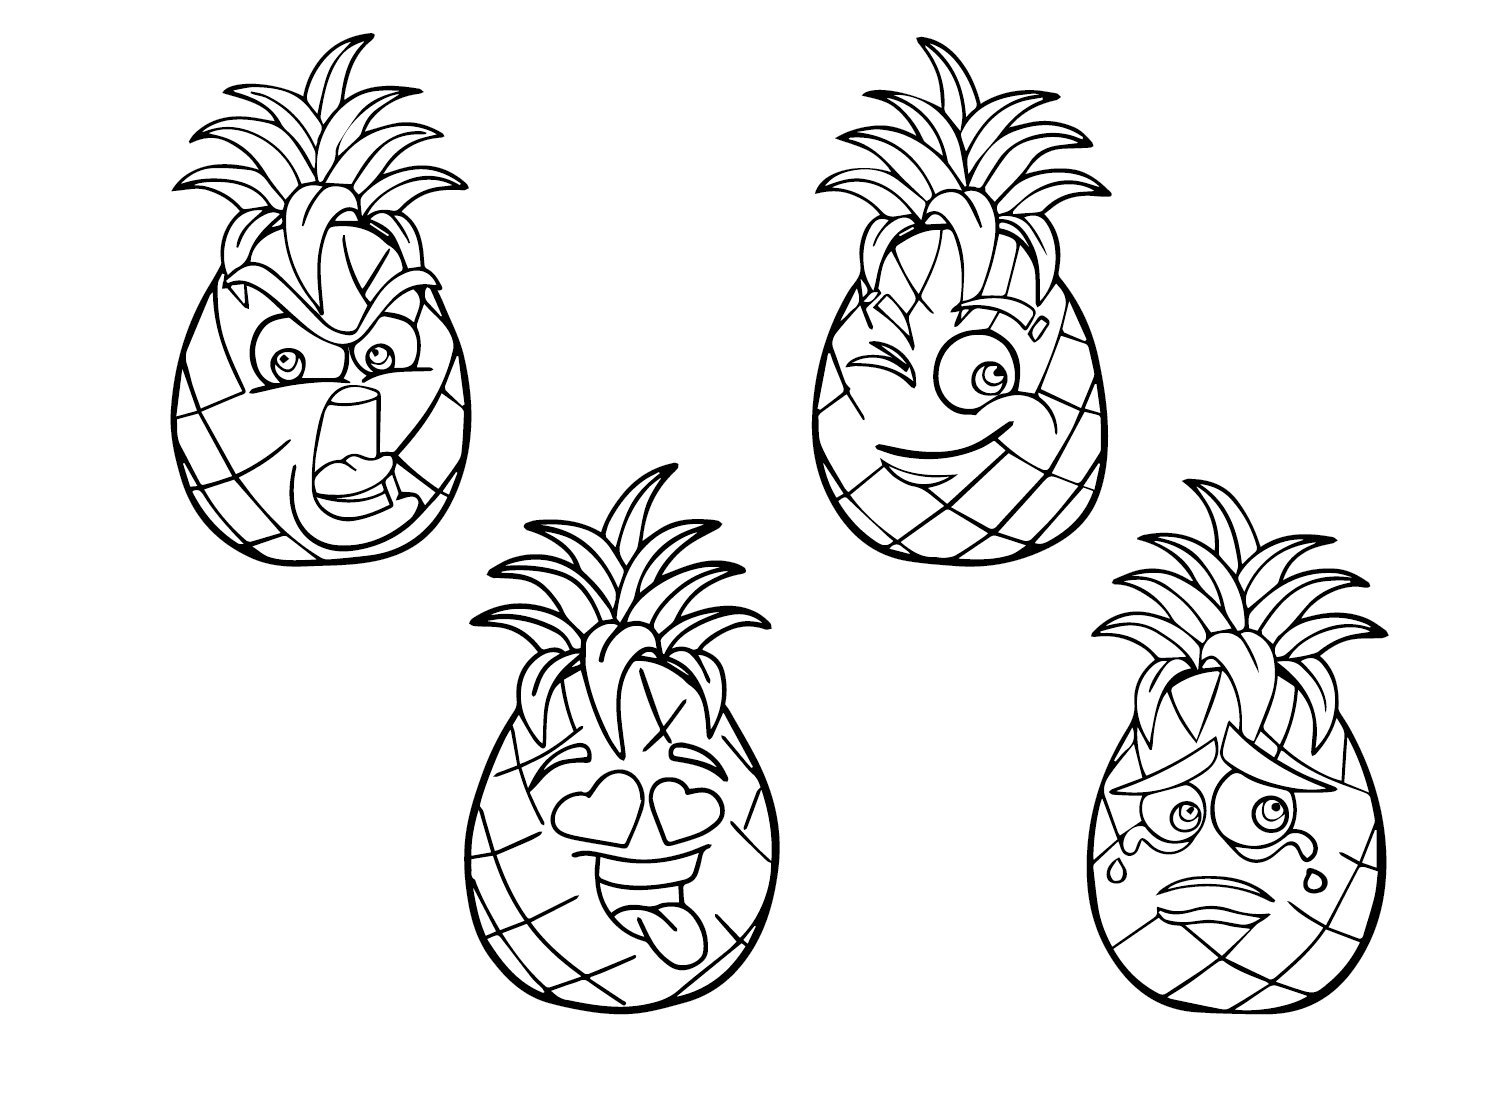 菠萝中的菠萝卡通人物